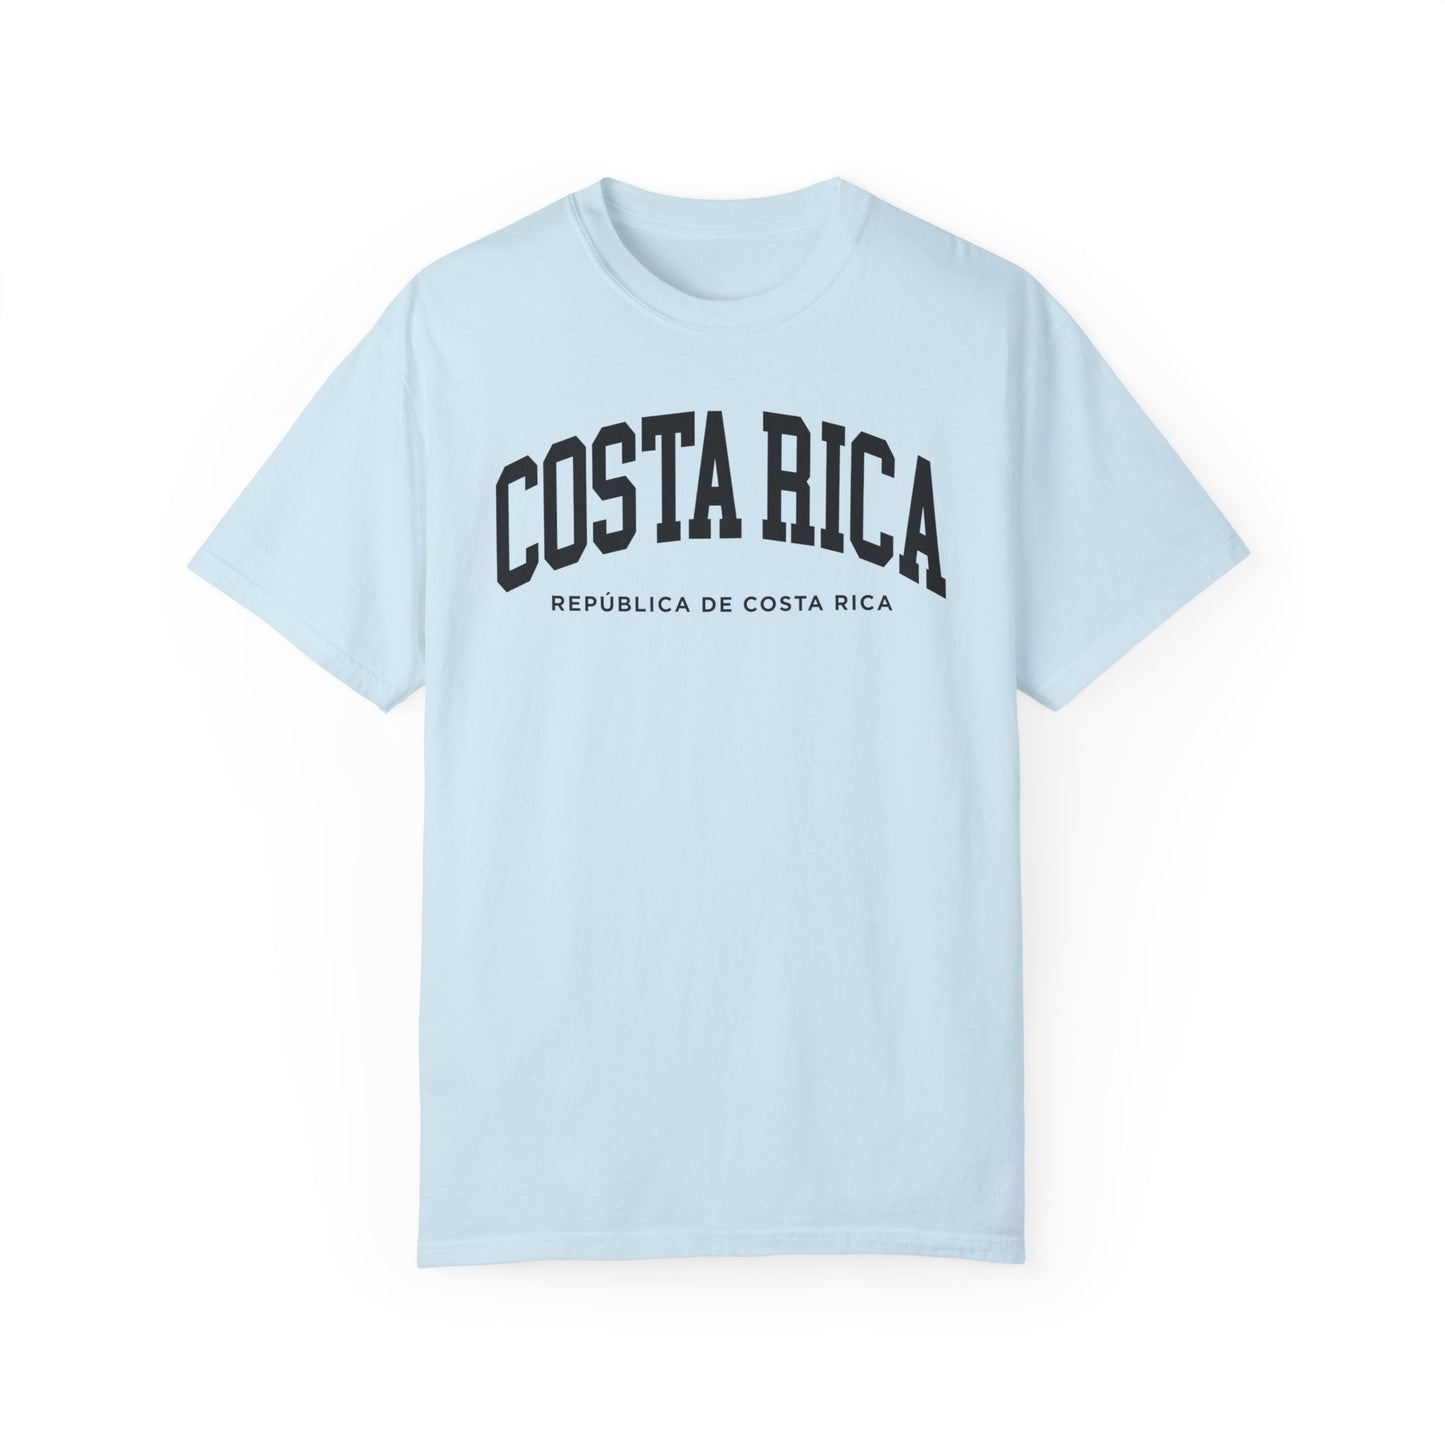 Costa Rica Comfort Colors® Tee